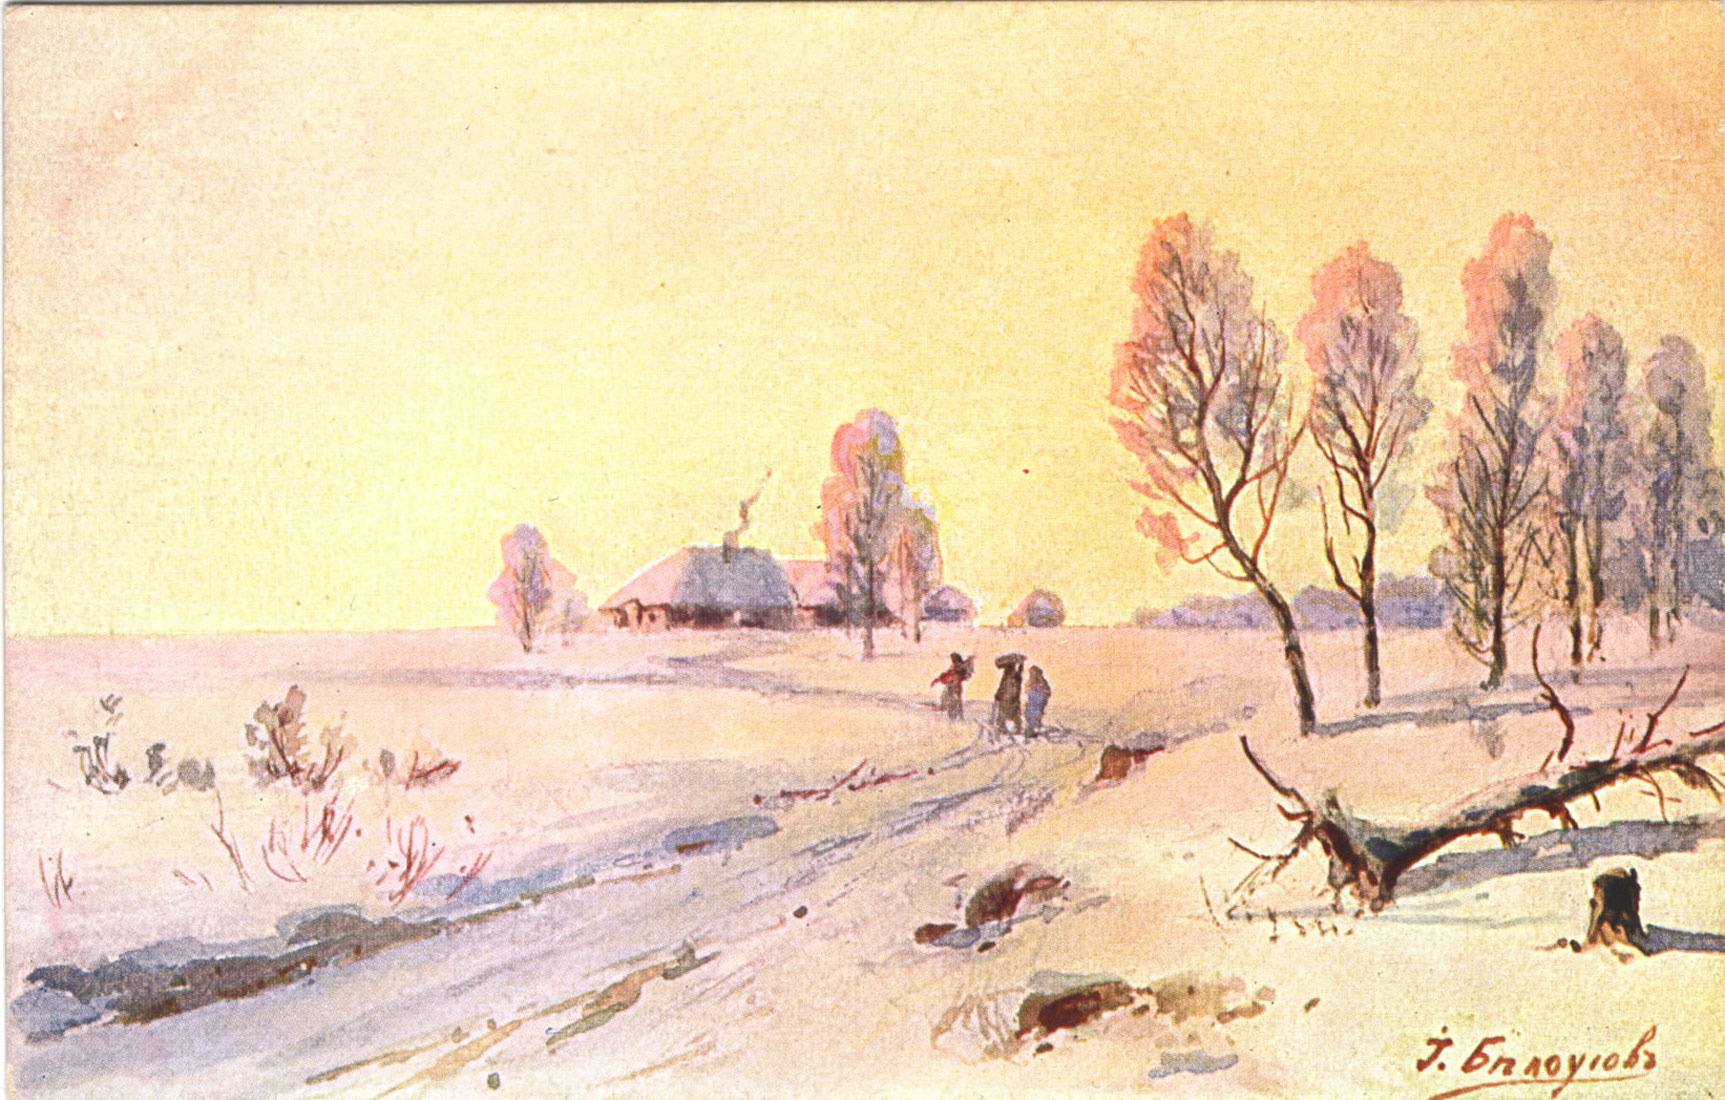 [За деревенской околицей зимой : открытка]. - [Stockholm] : E. G. S. i. S., [между 1904 и 1917] . - Цветная автотипия ; 8,8х13,8 см.